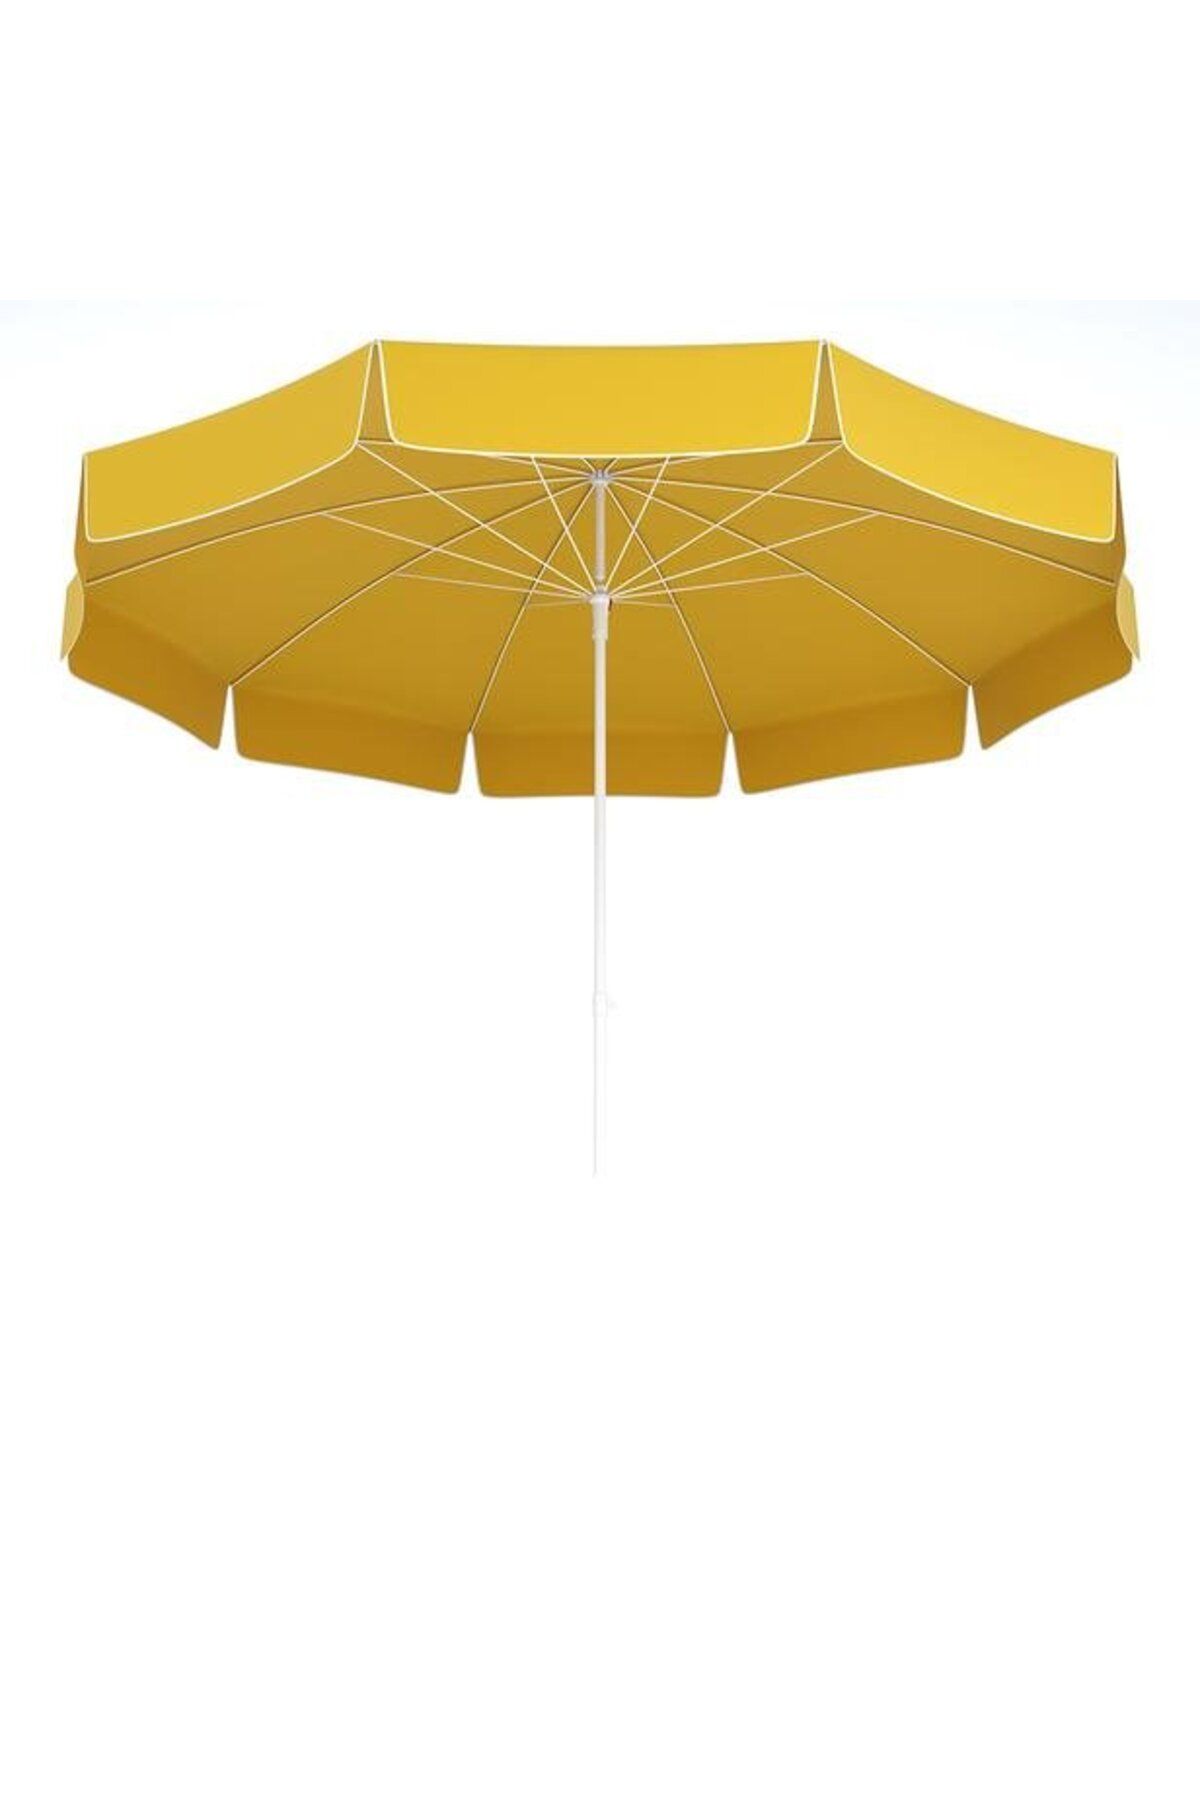 Tevalli 200 Q Elite Çantalı Plaj Şemsiye - Sarı  (  1  ADET  )